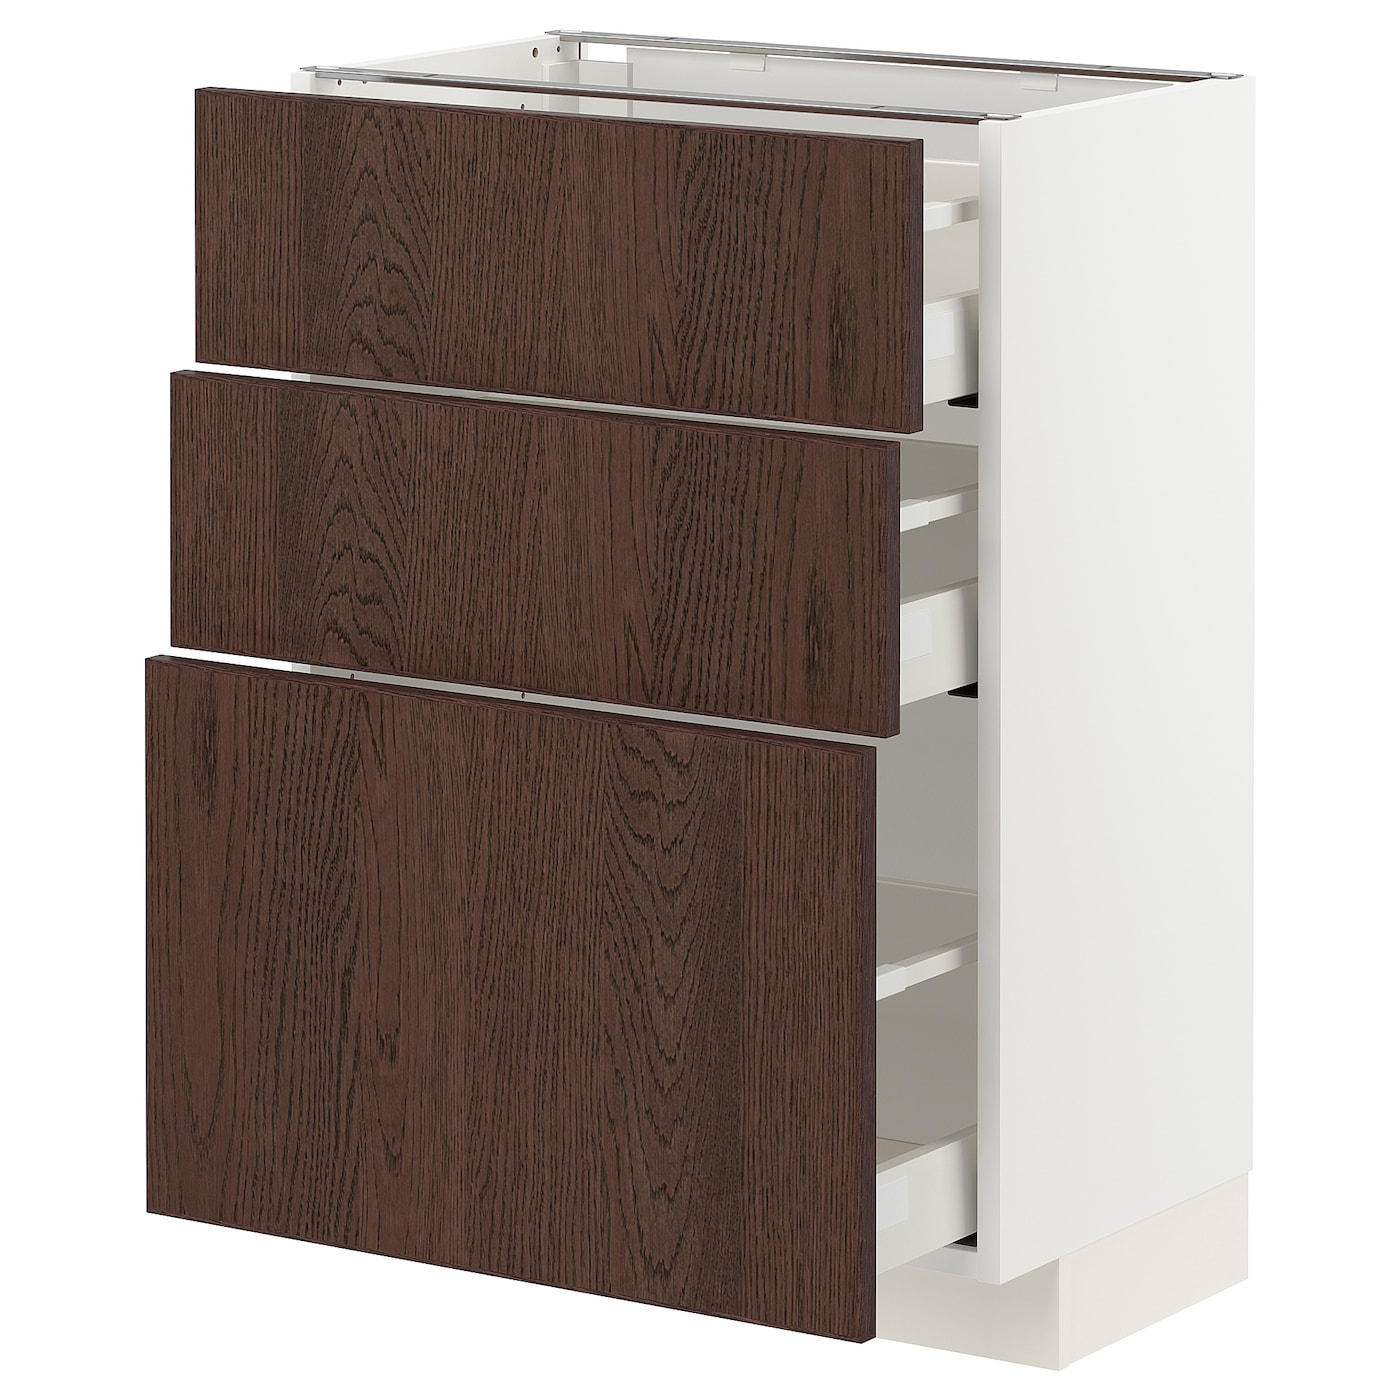 Напольный кухонный шкаф  - IKEA METOD MAXIMERA, 88x39x60см, белый/темно-коричневый, МЕТОД МАКСИМЕРА ИКЕА